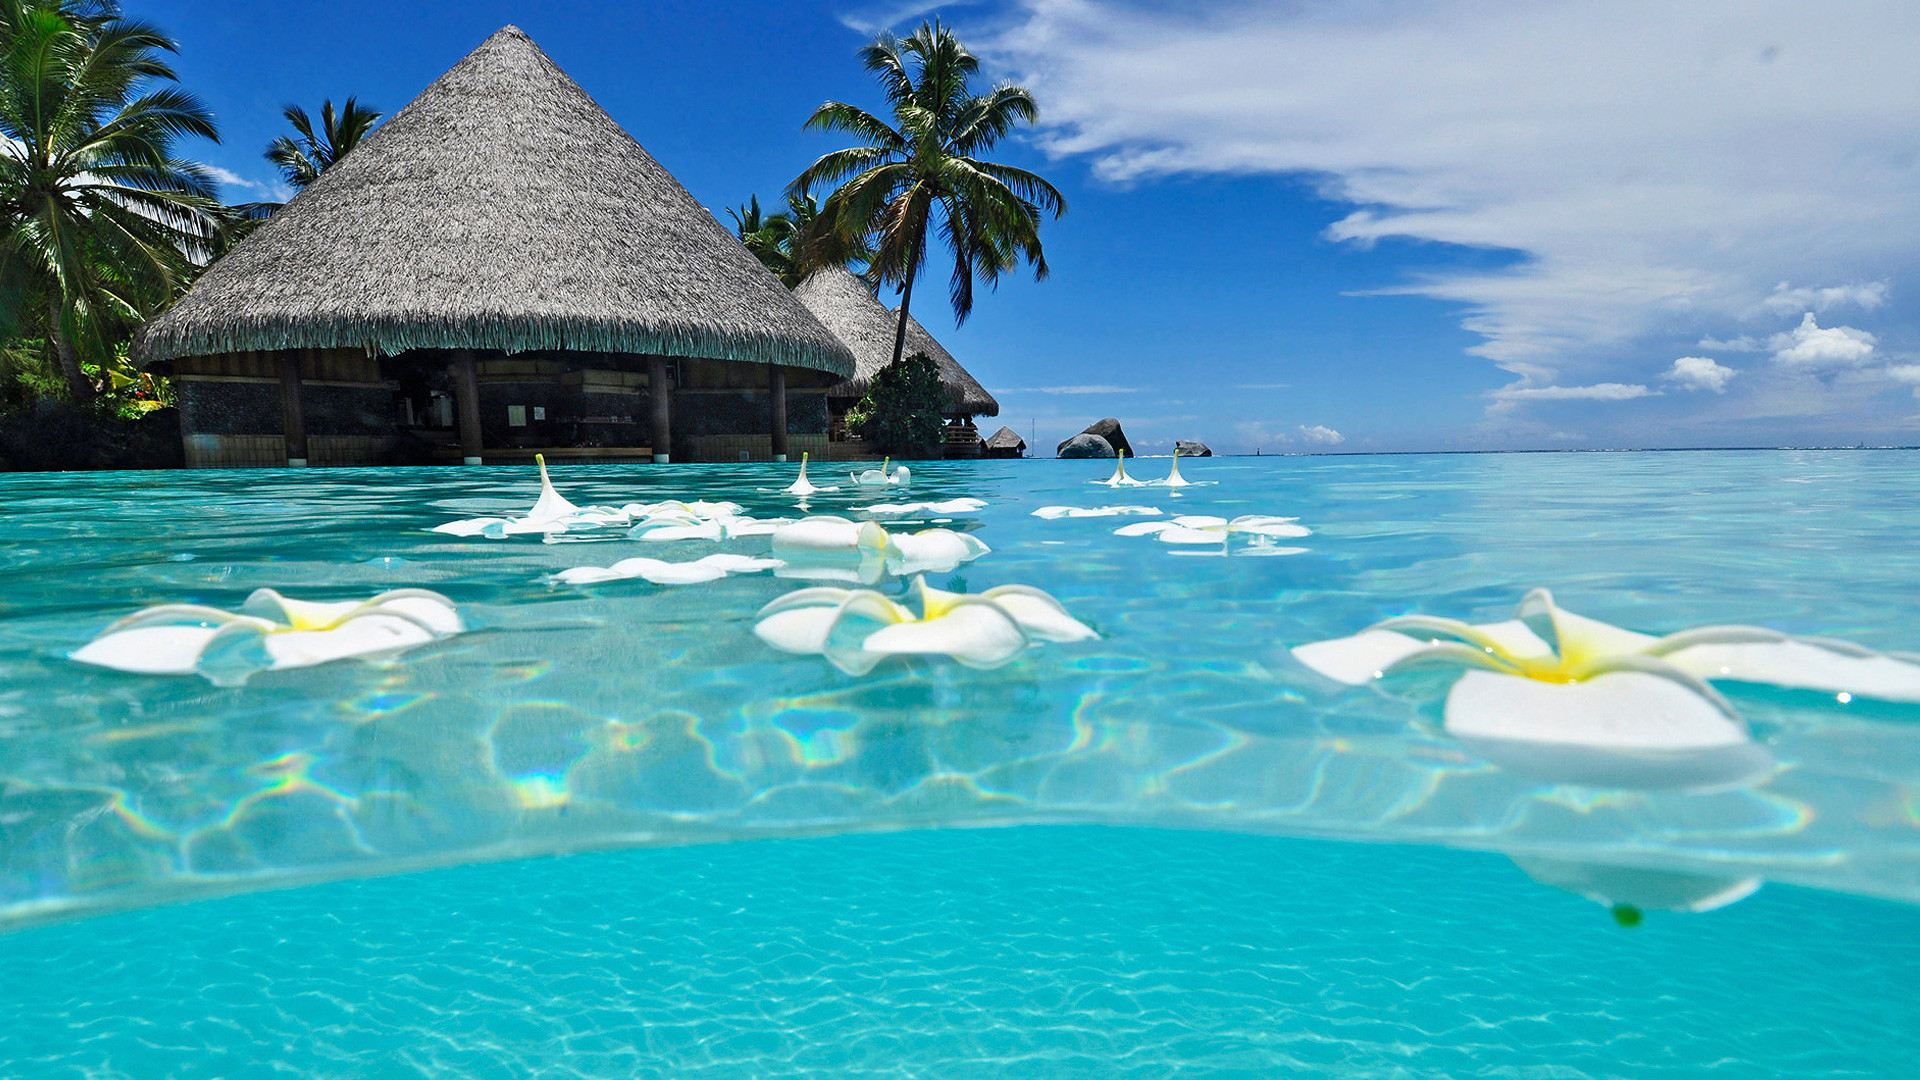 Biển: Khám phá vẻ đẹp của biển xanh ngắt trong hình ảnh này. Chắc chắn sẽ cho bạn cảm giác bình yên và thư giãn!